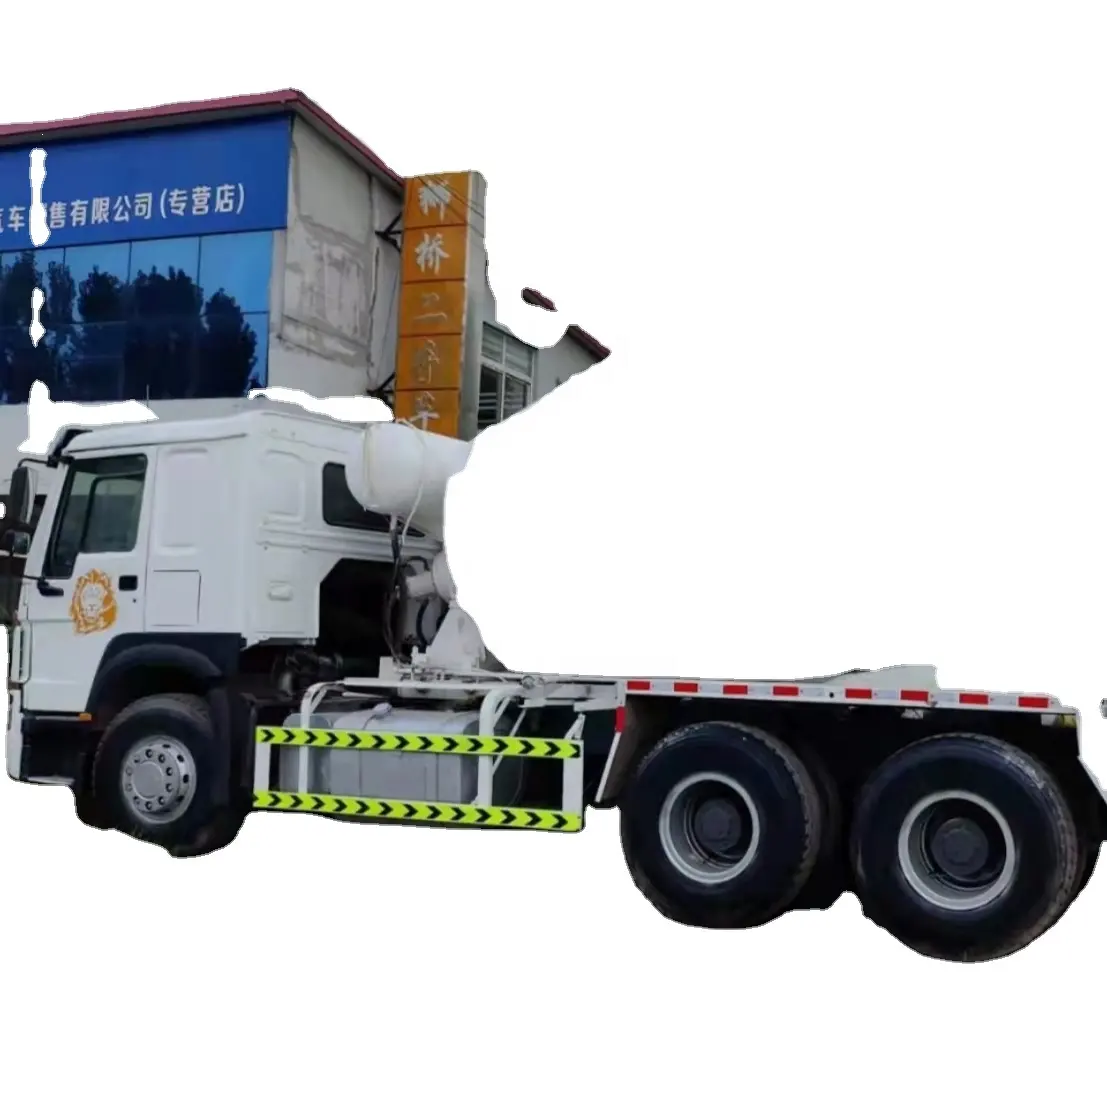 Howo 12 CBM cemento che versa camion betoniera piccolo In vendita a basso prezzo con alta qualità